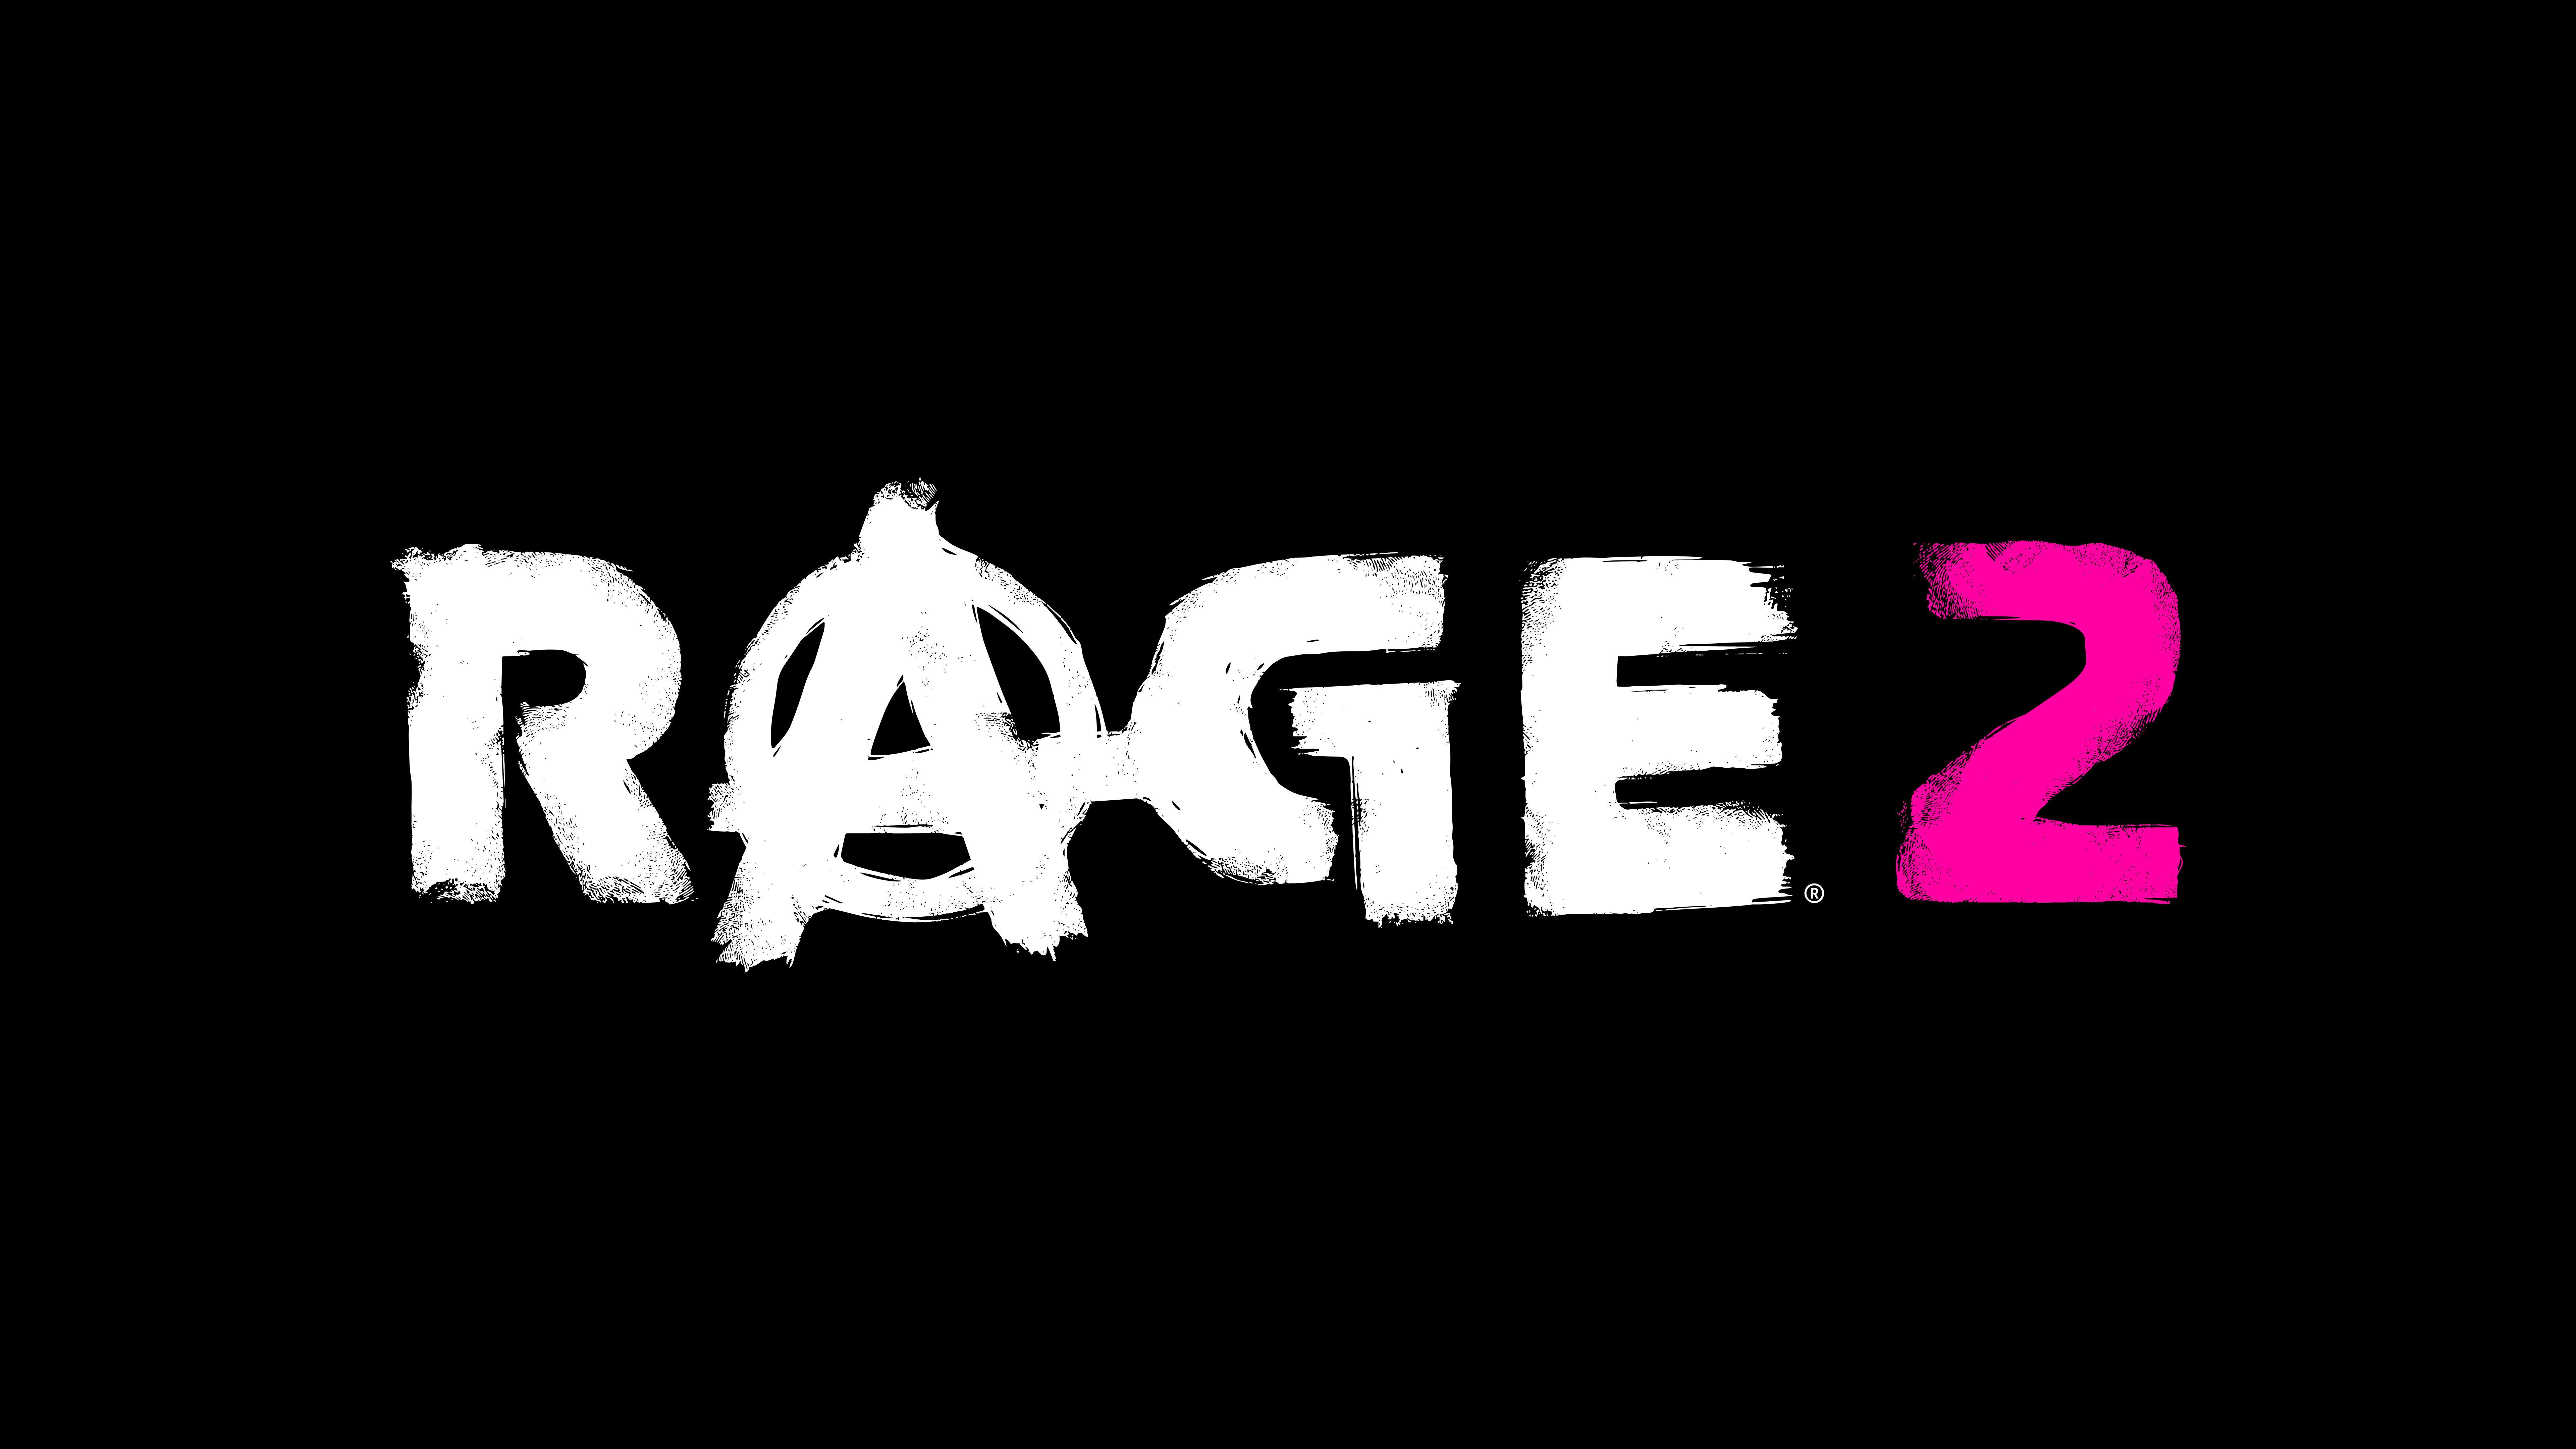 Rage Logo - Rage 2 Logo 8k, HD Games, 4k Wallpaper, Image, Background, Photo